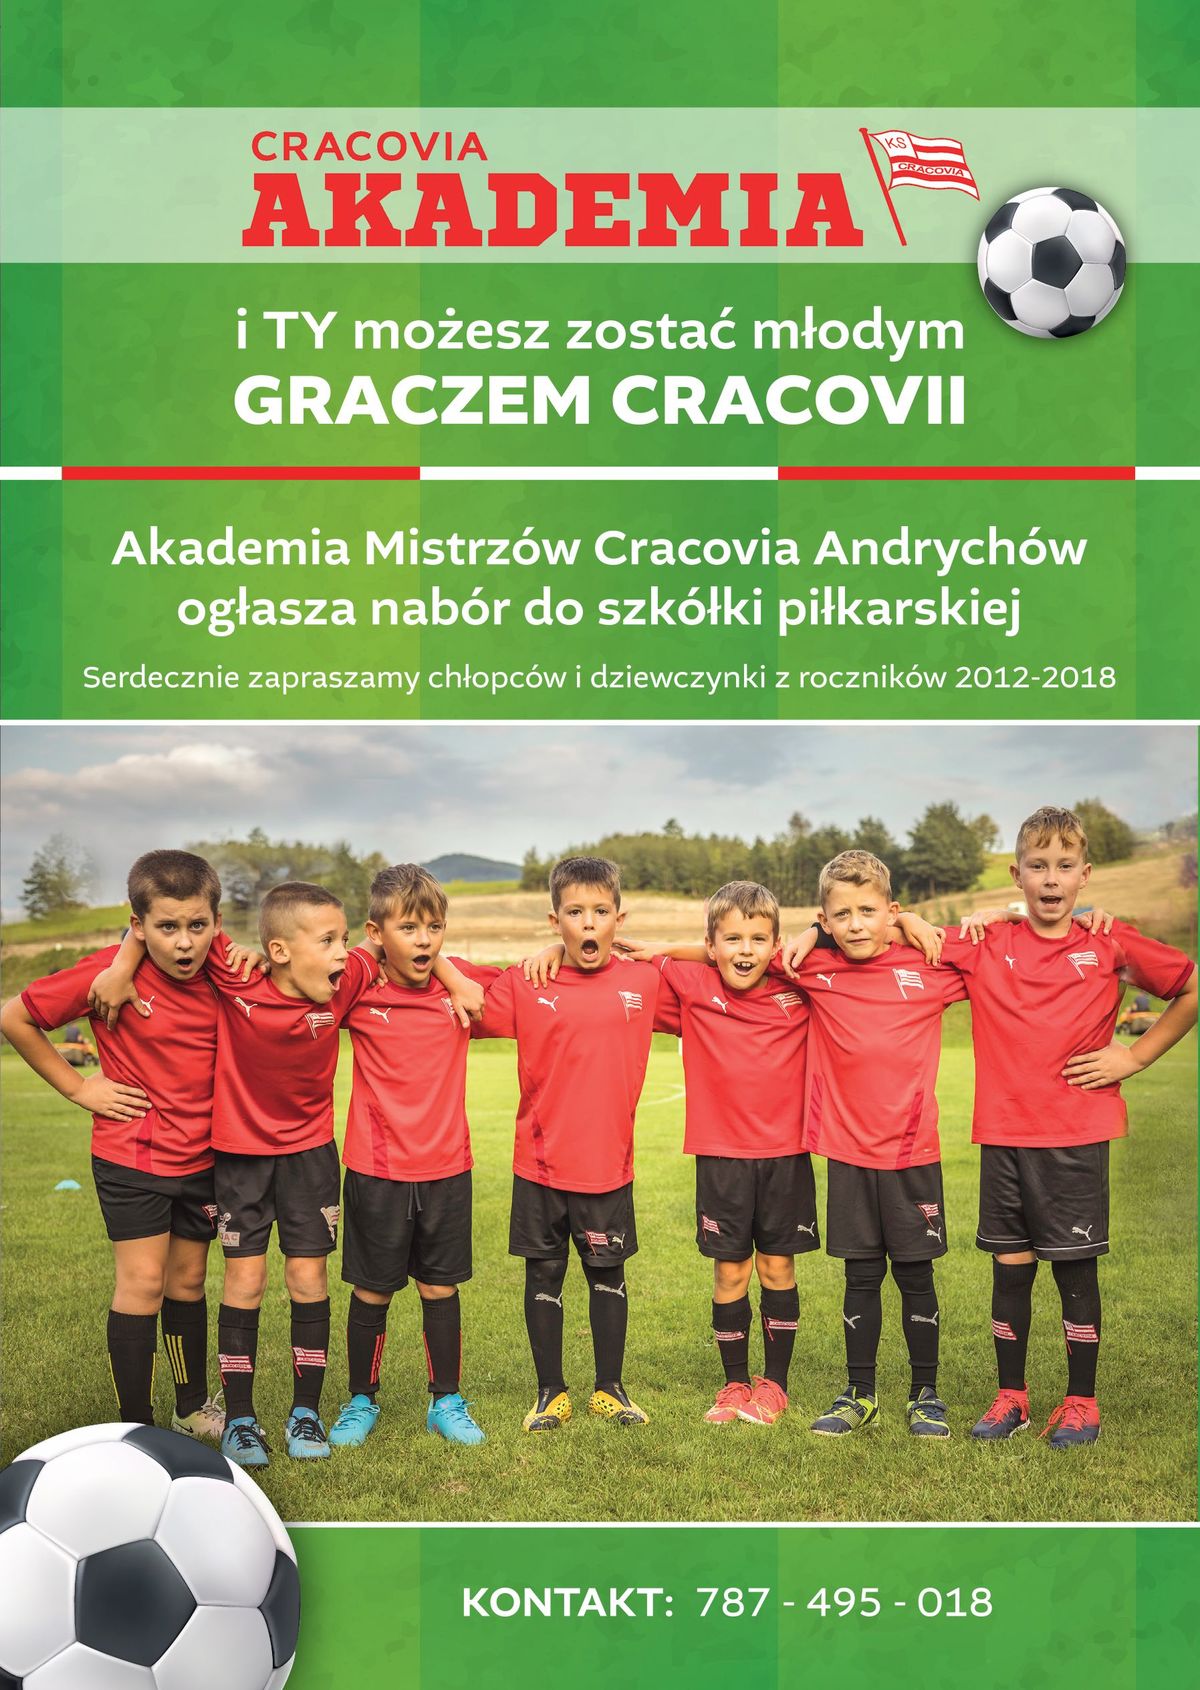 Akademia Piłkarska Cracovii w Andrychowie zaprasza na treningi